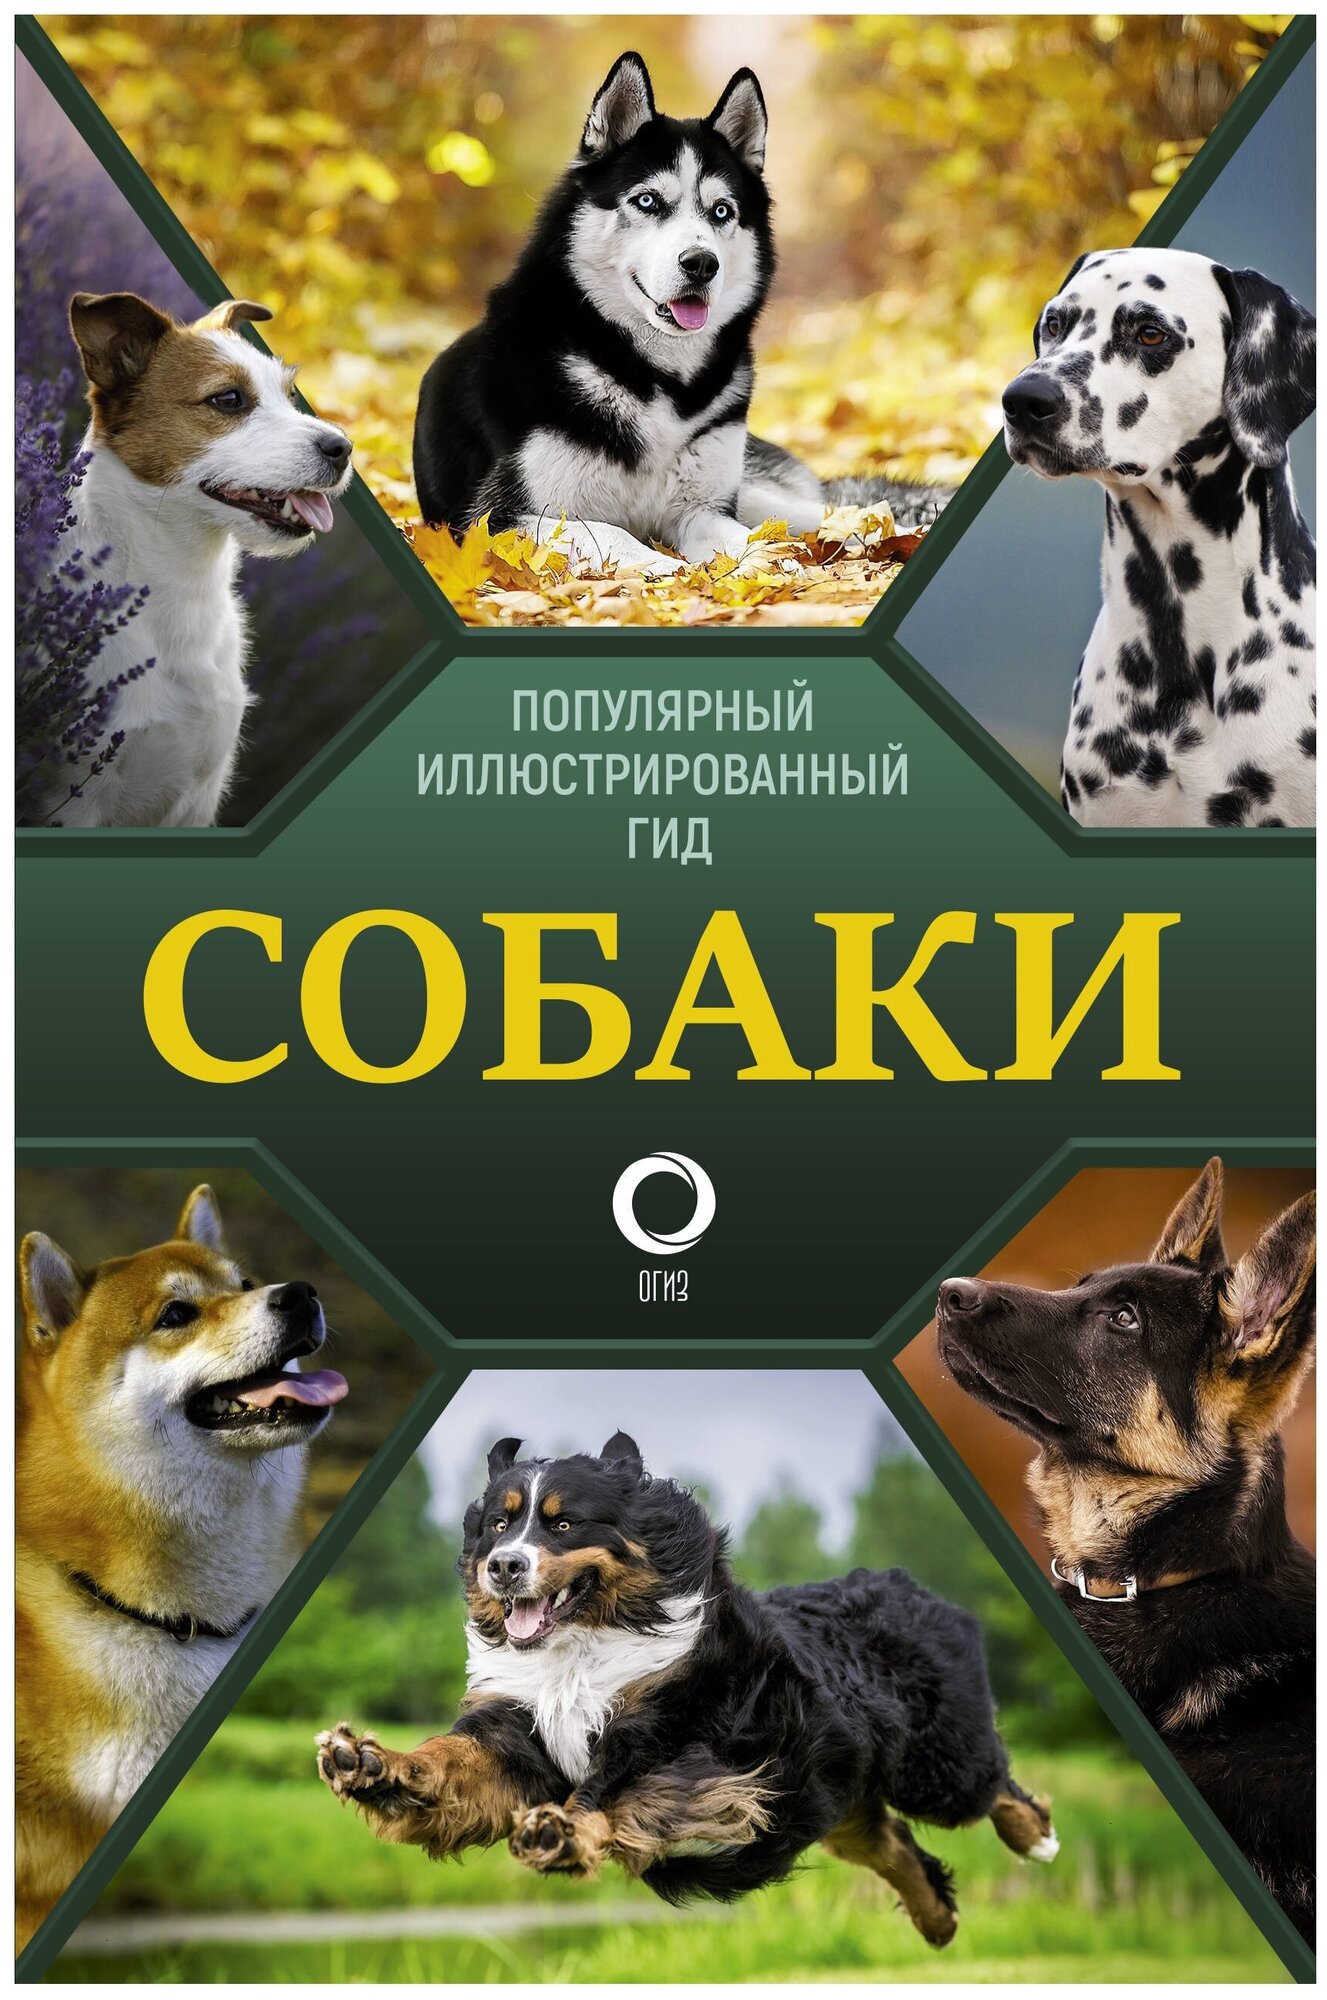 Собаки Популярный иллюстрированный гид Экциклопедия Барановская Ирина 12+